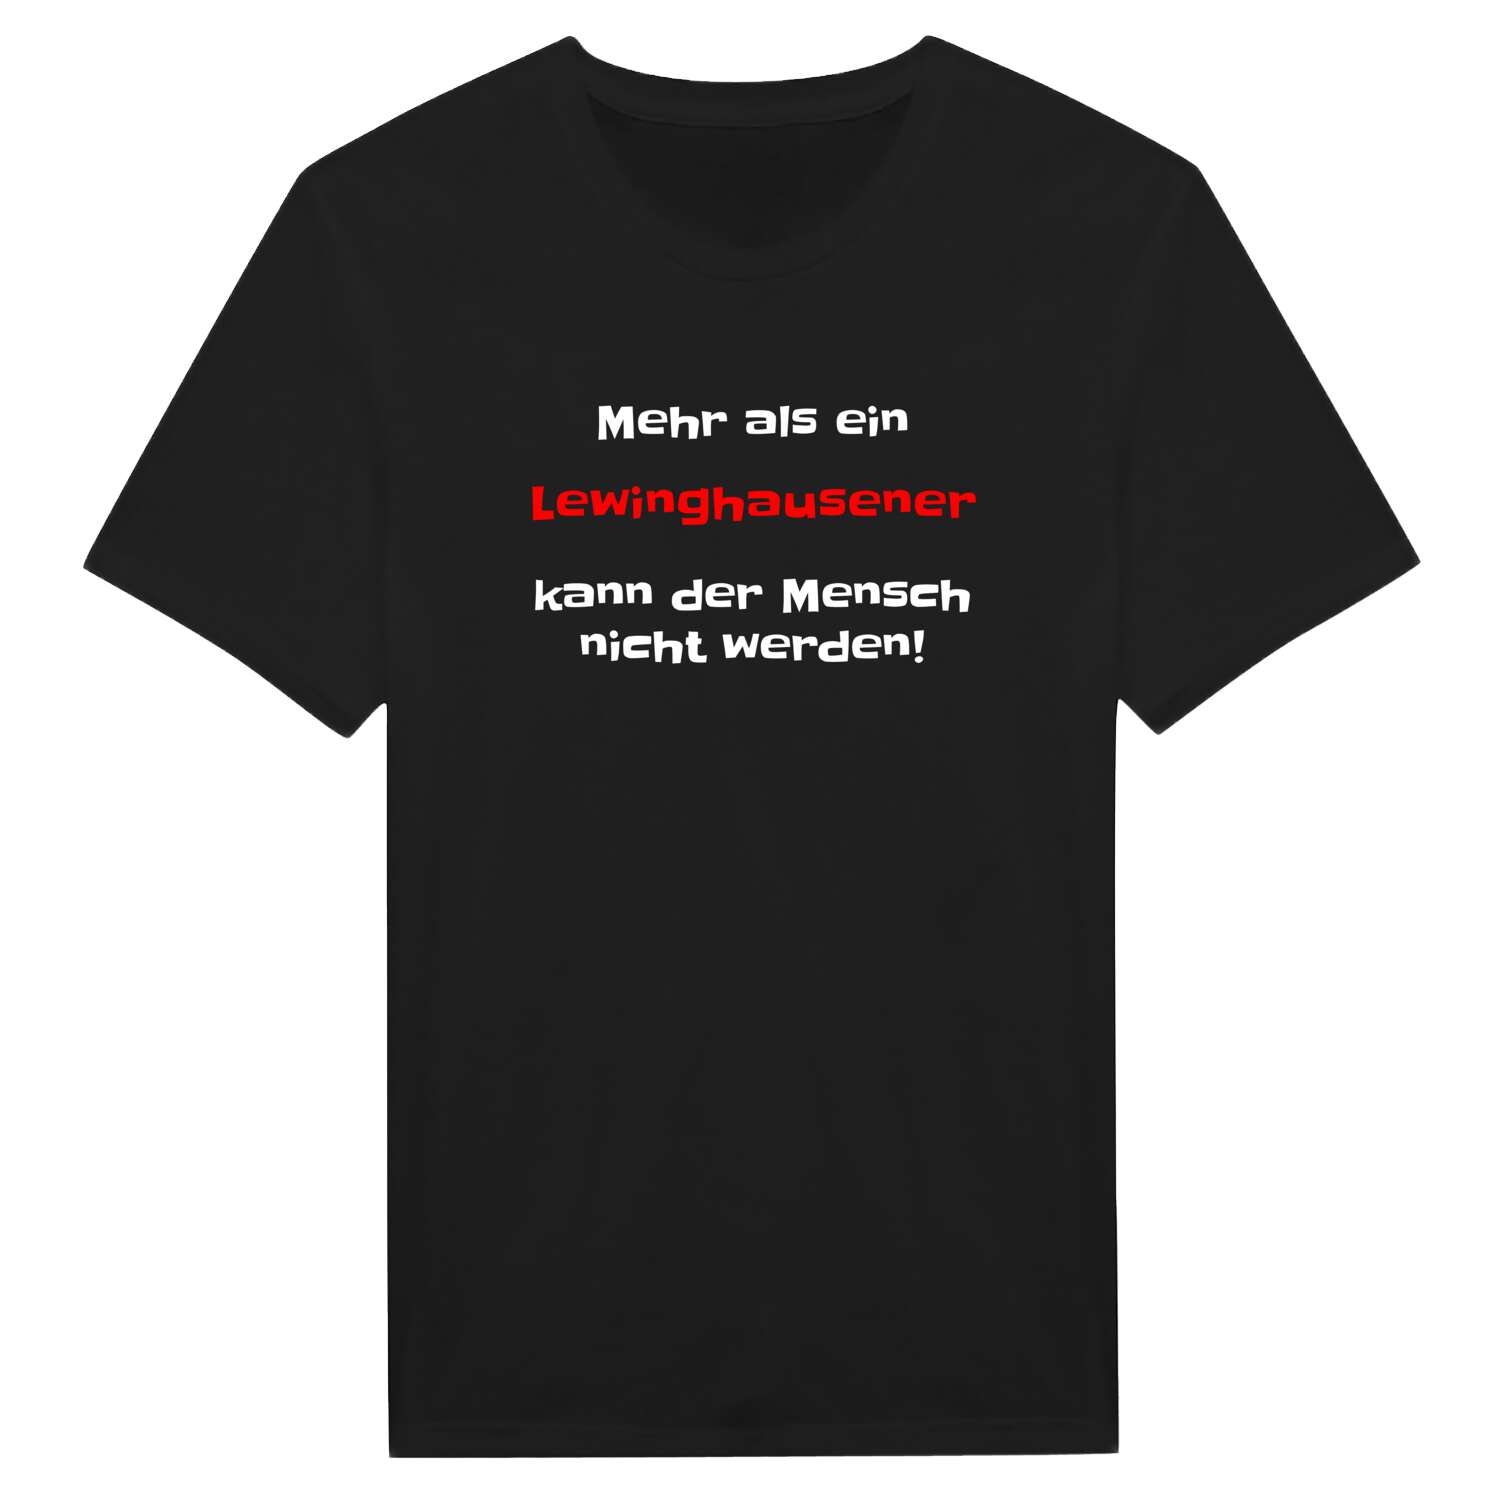 Lewinghausen T-Shirt »Mehr als ein«